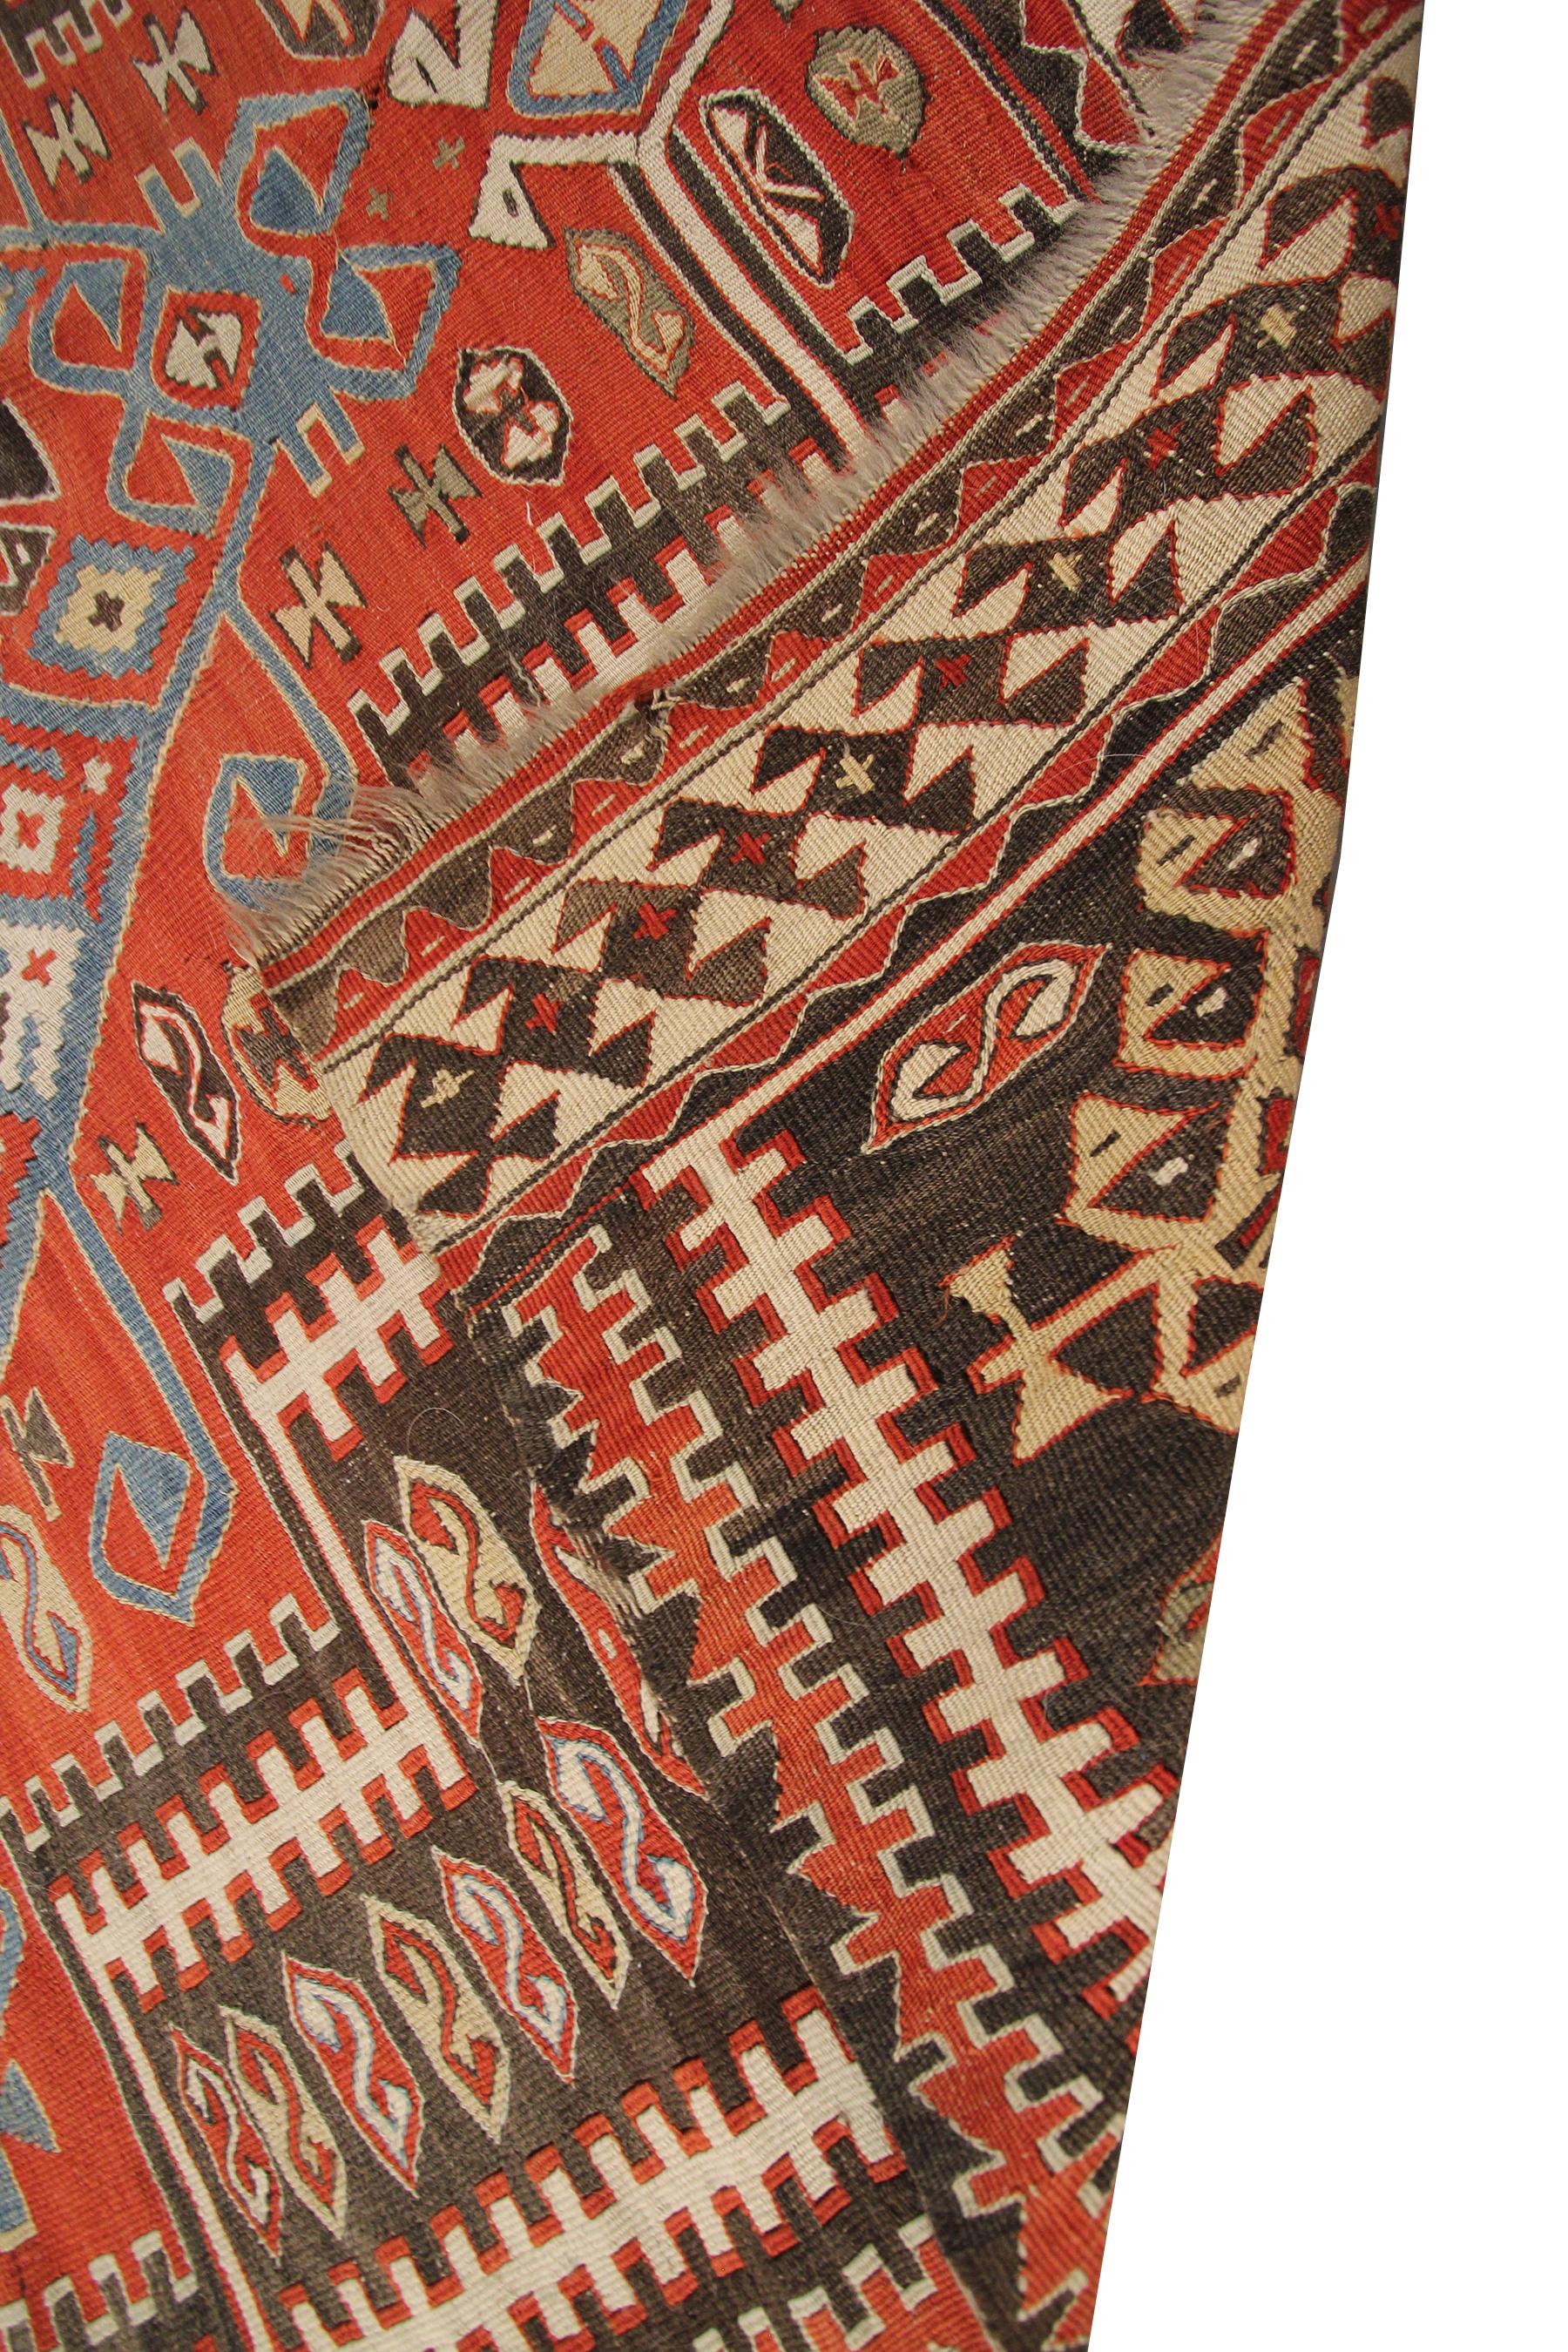 Antique Caucasian Kilim Caucasian Kazak Flatwoven Square Tapestry 6